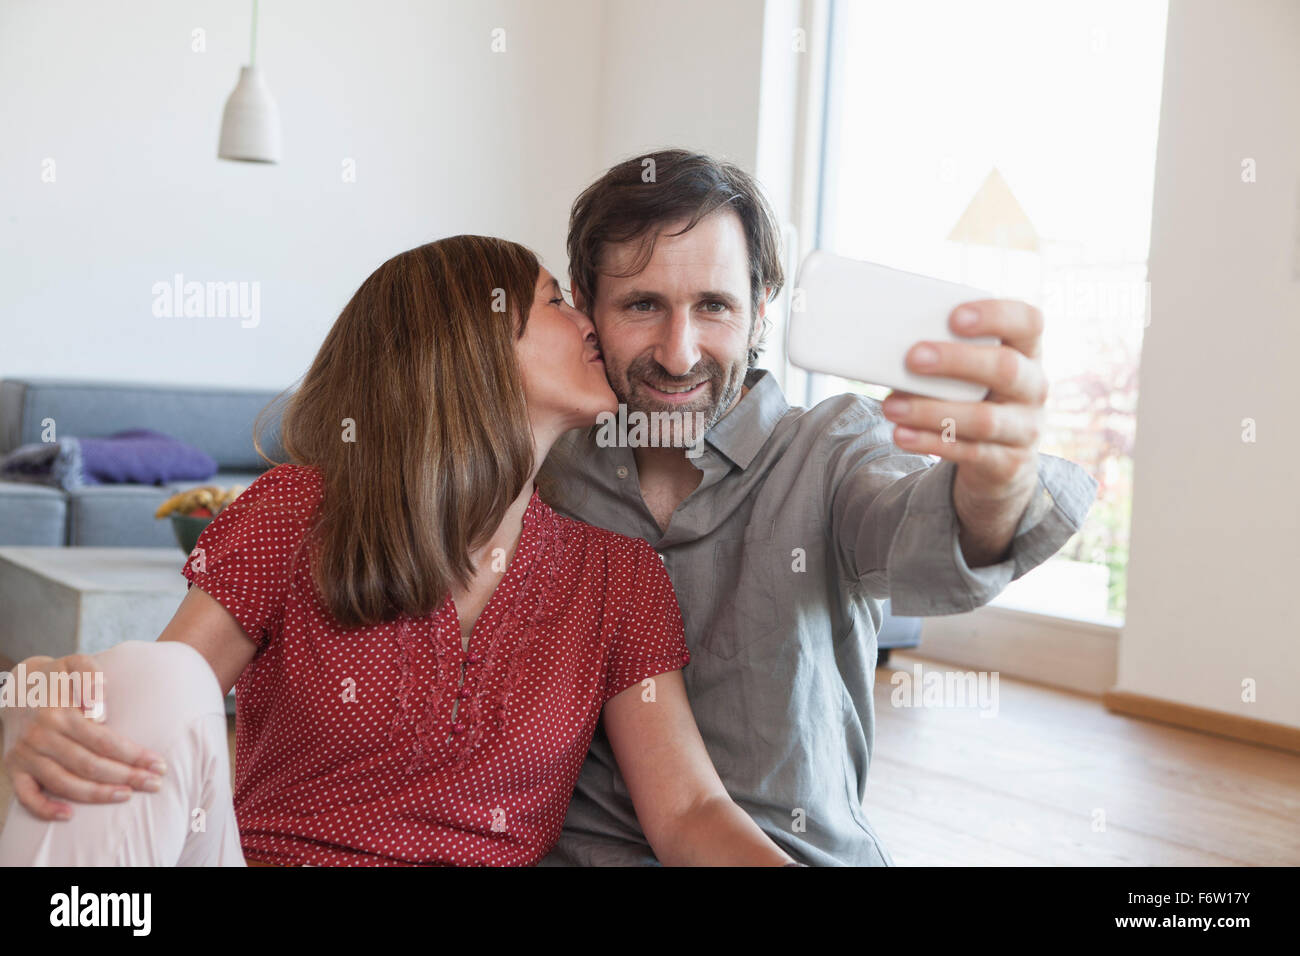 Älteres Paar am Boden unter Selfie mit Smartphone Stockfoto